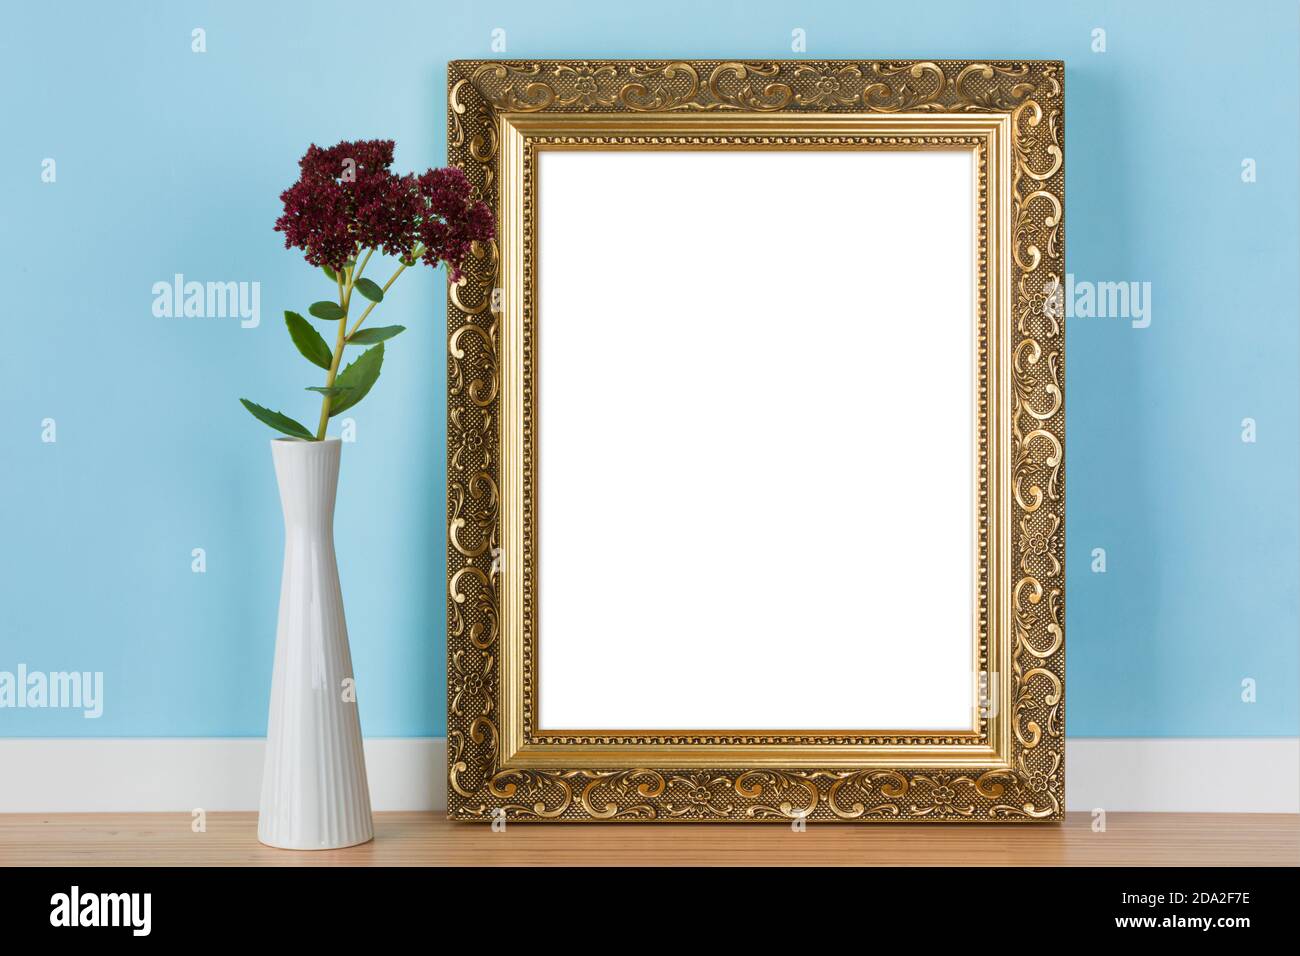 Vertikaler goldener Bilderrahmen an blauer Wand mit Steinbrotblumen in Vase Mockup Schablone gelehnt. Leerer Bildbereich mit Beschneidungspfad maskiert Stockfoto